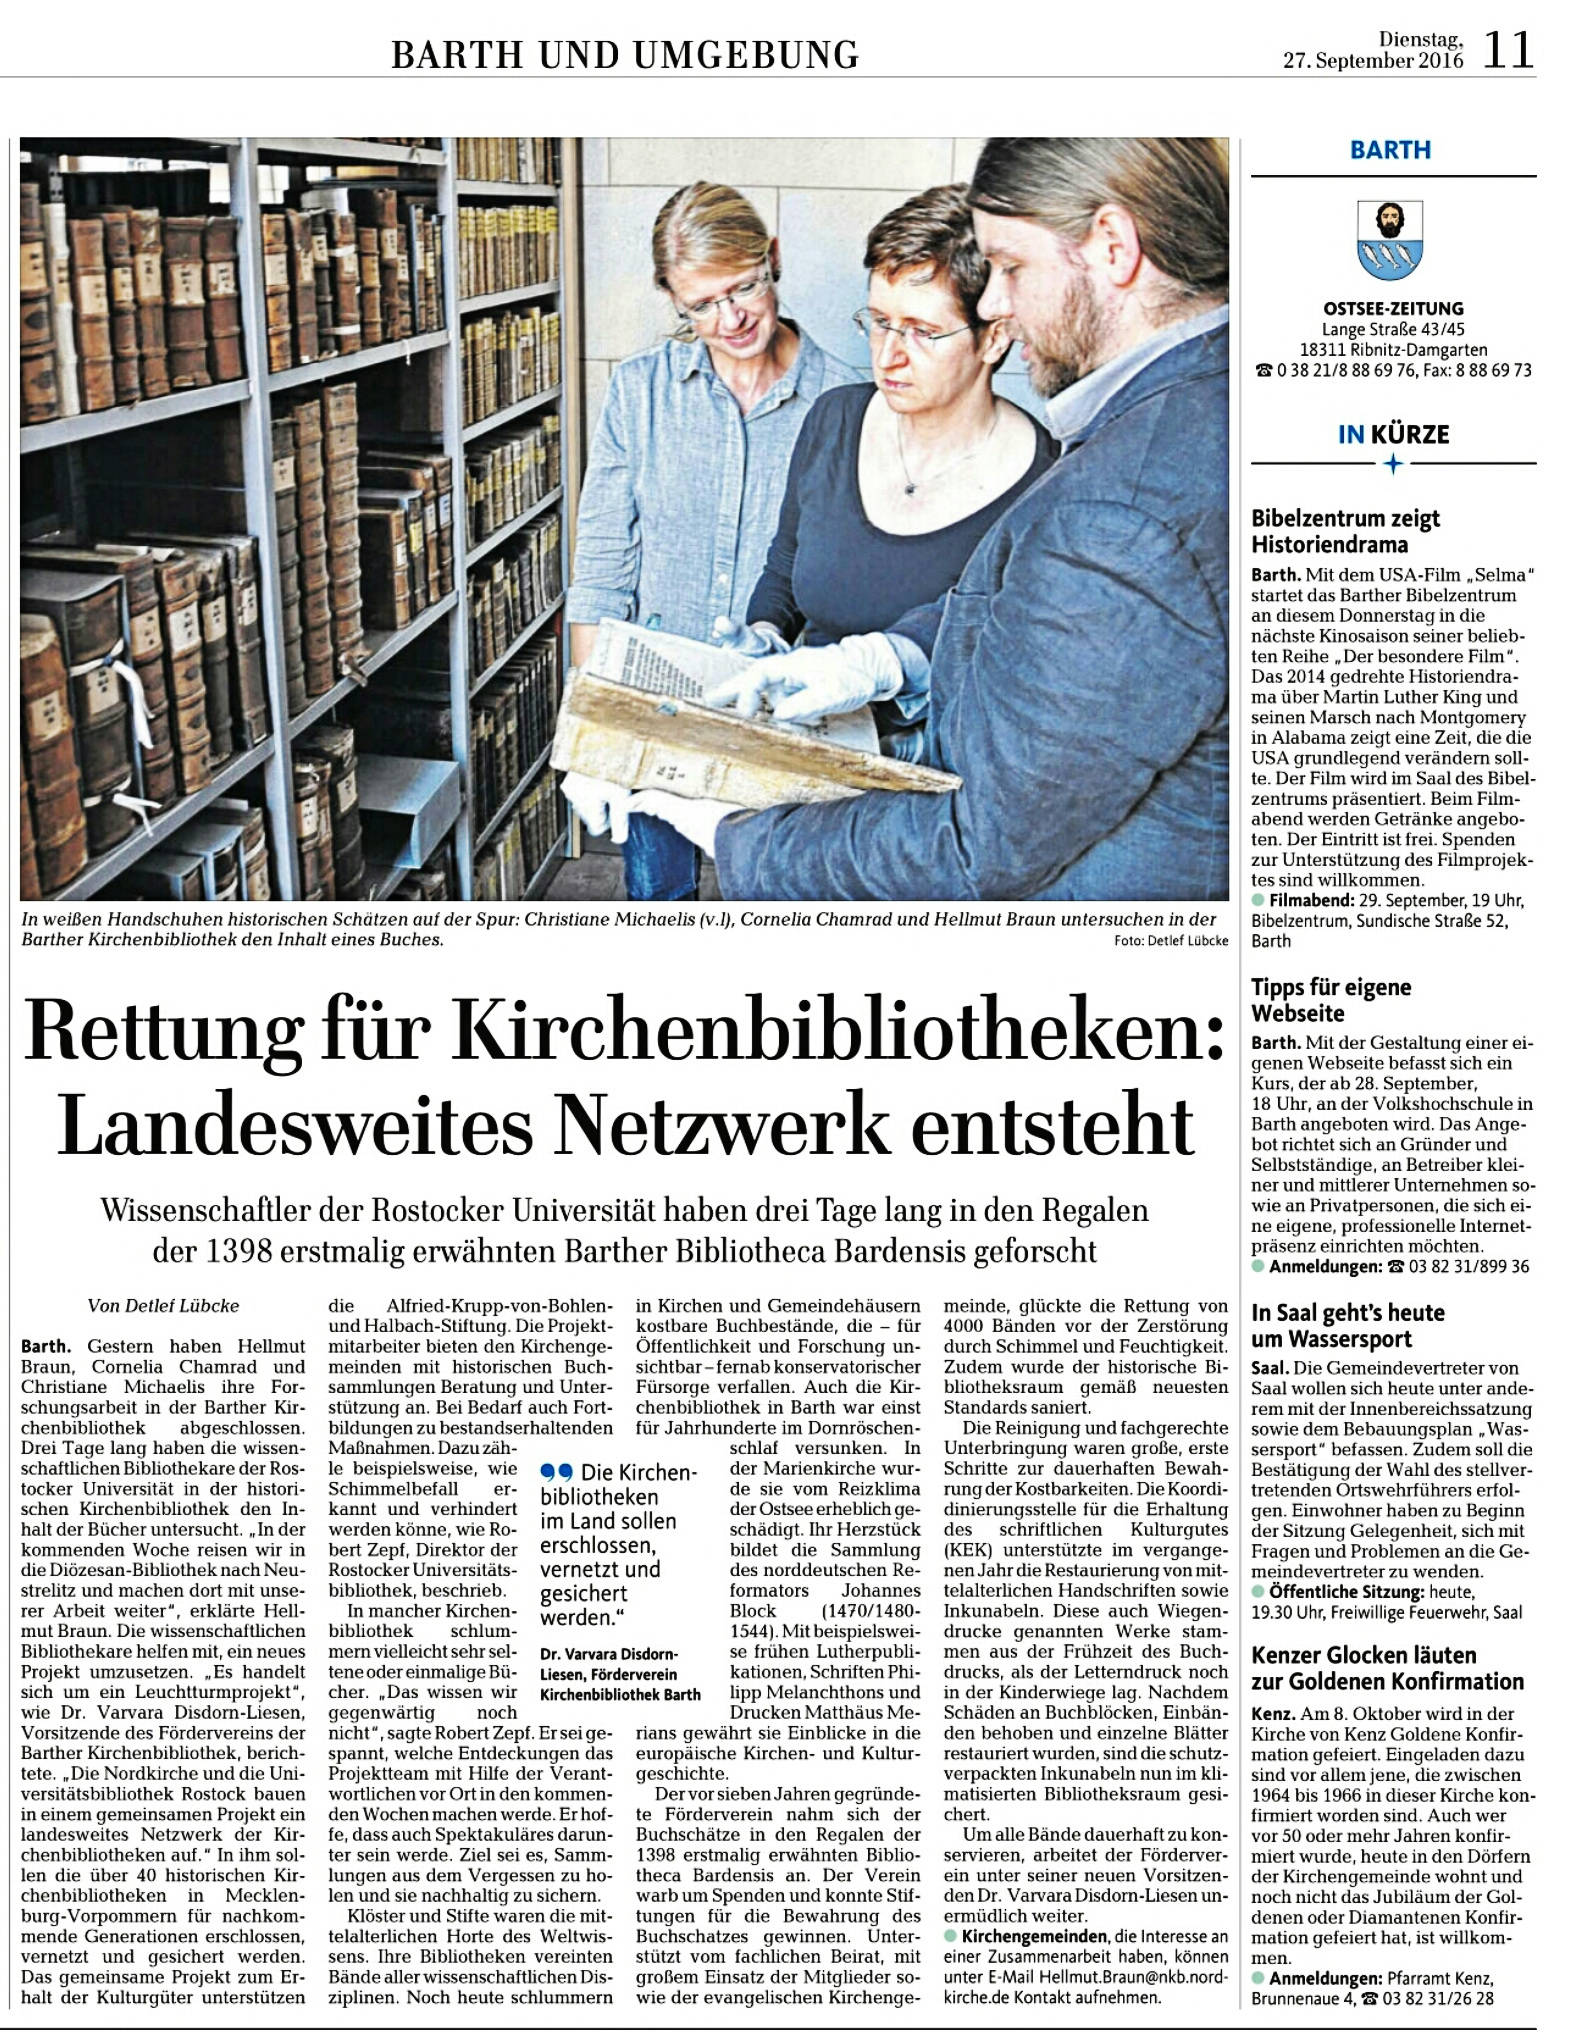 Ostseezeitung vom 27.9.2016